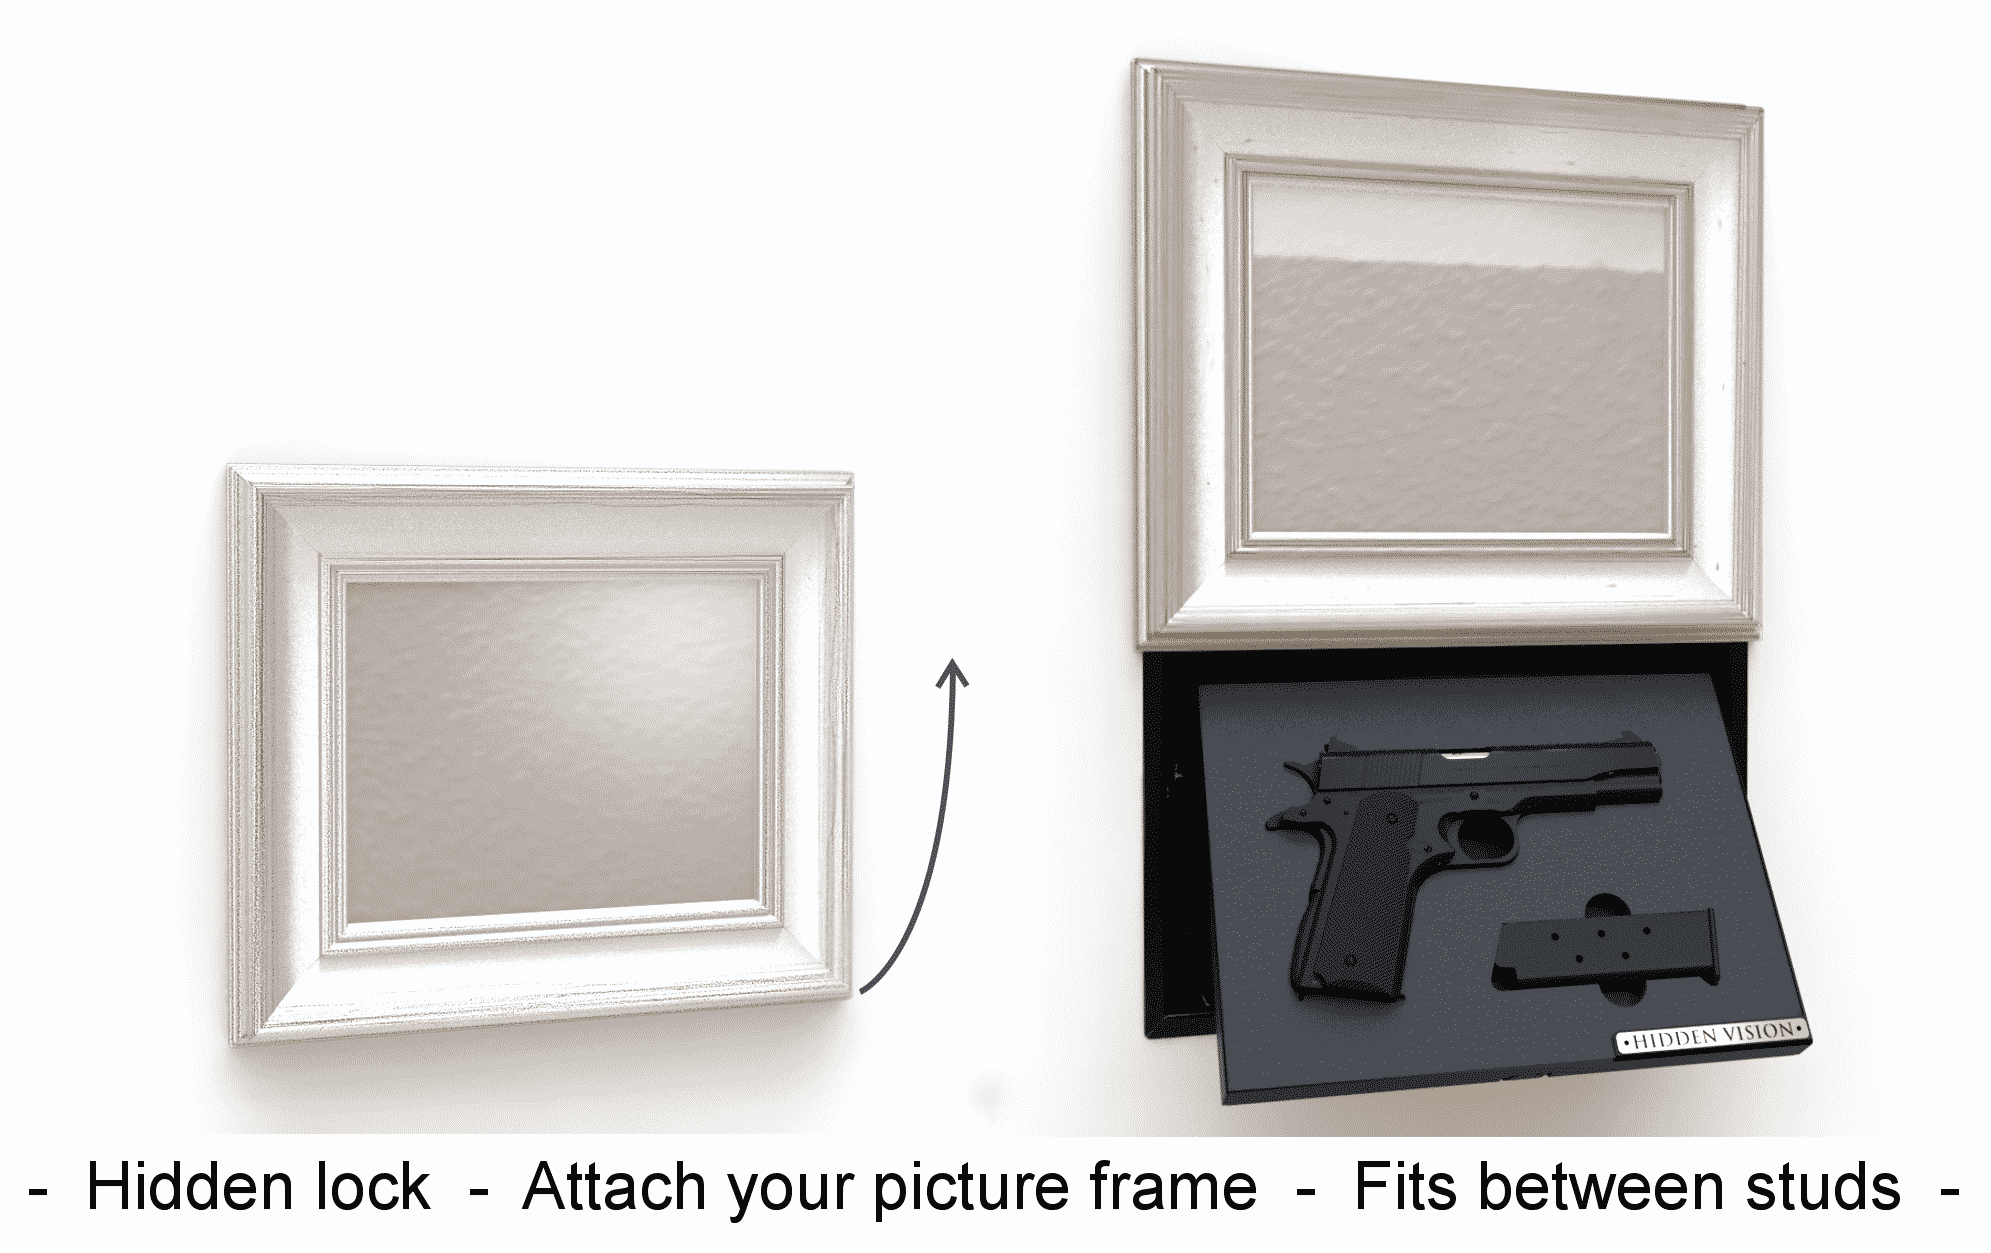 Automated hidden gun storage behind mirror or picture – Hidden Vision